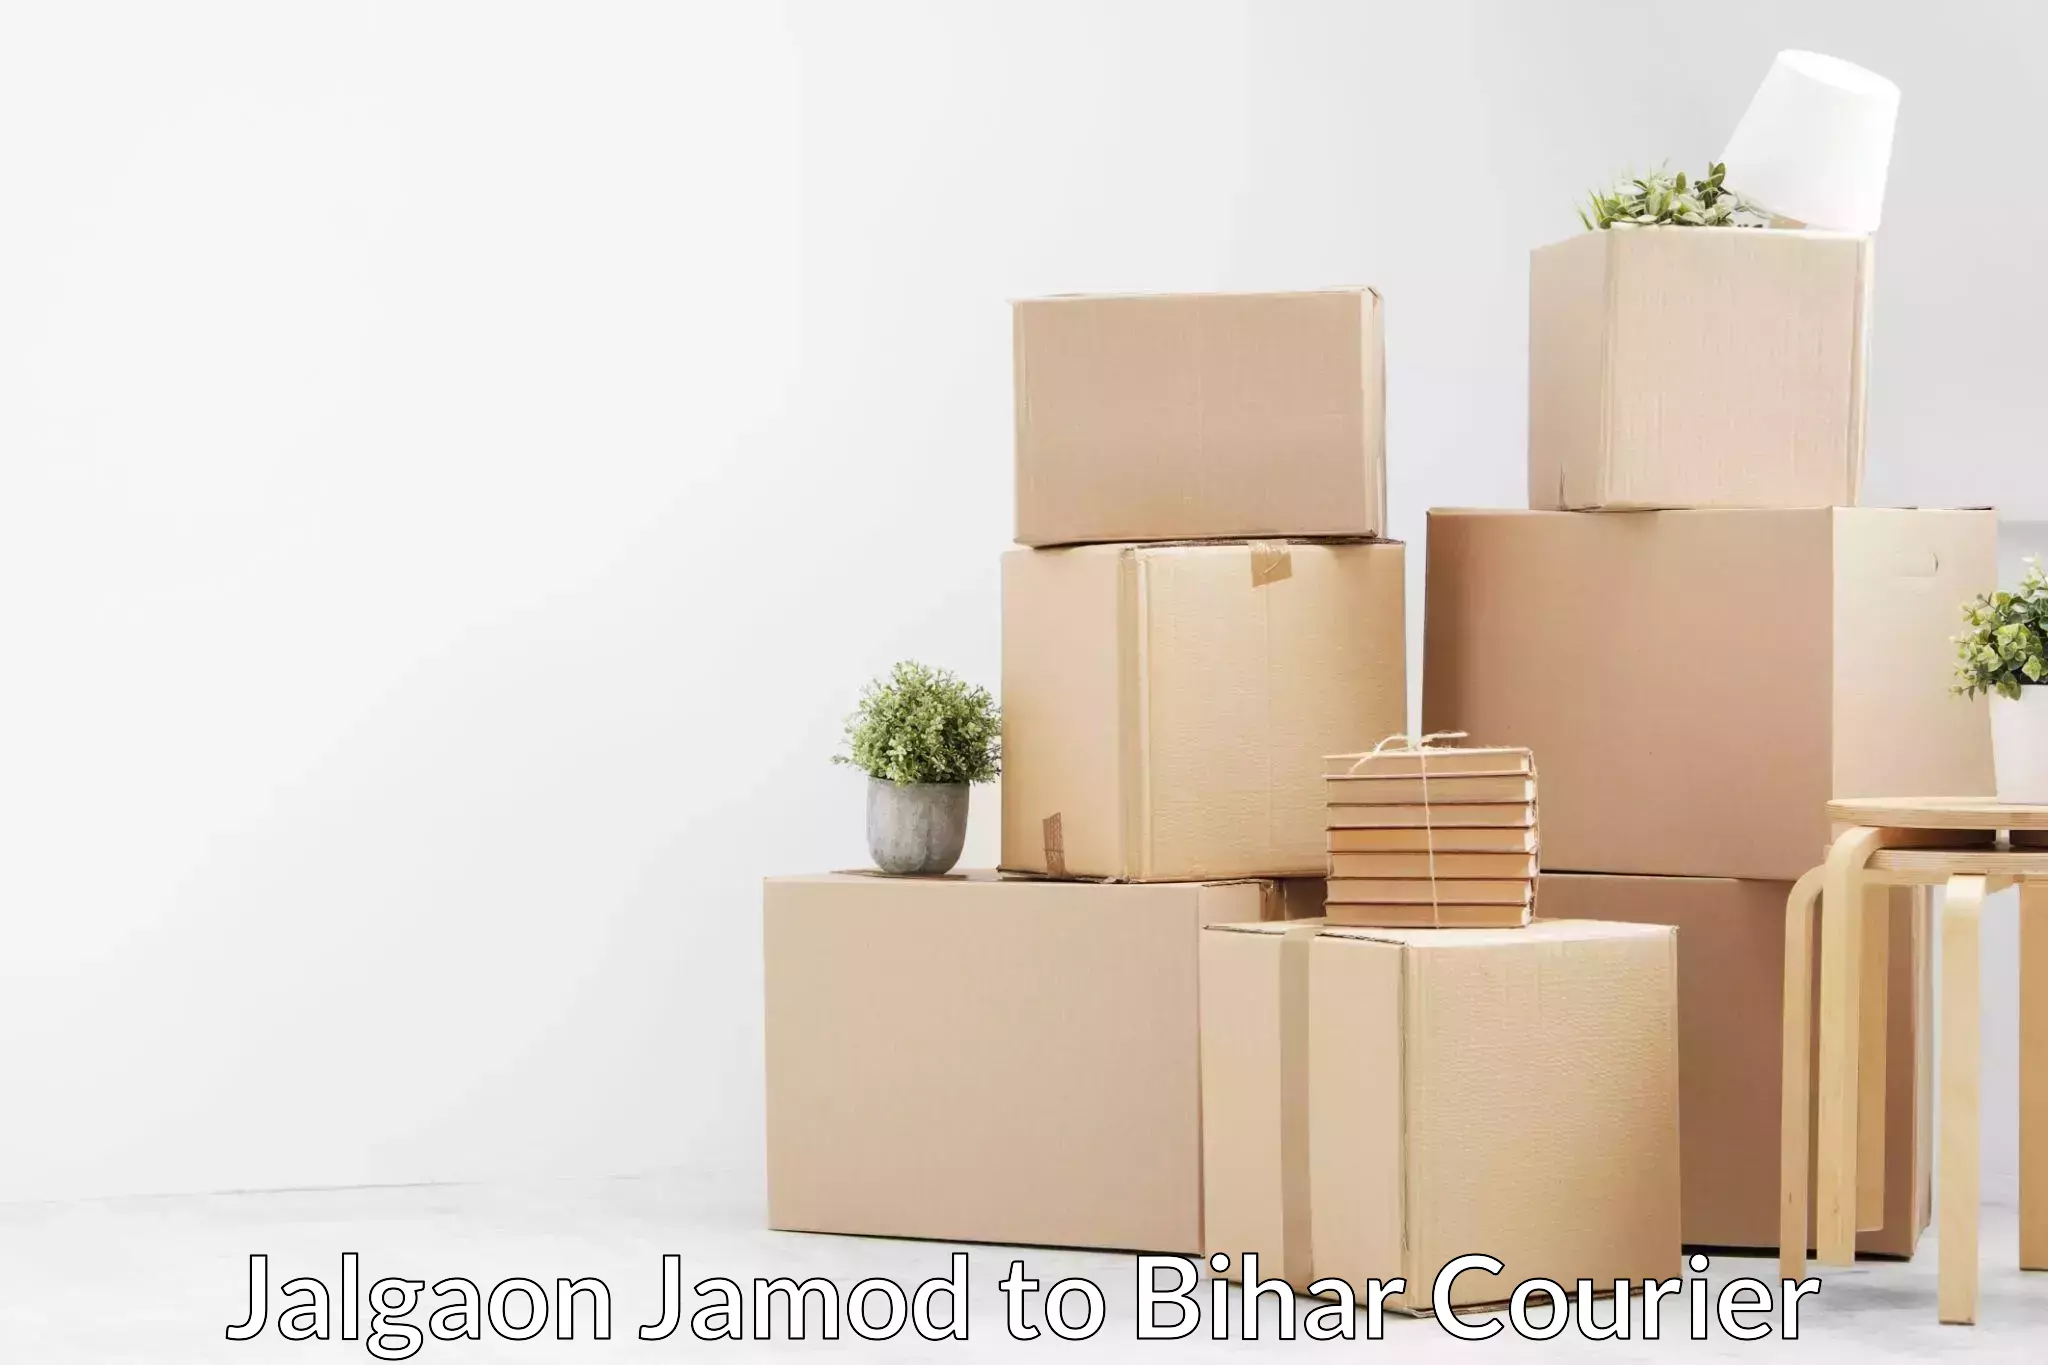 Furniture moving experts Jalgaon Jamod to Amba Kutumba